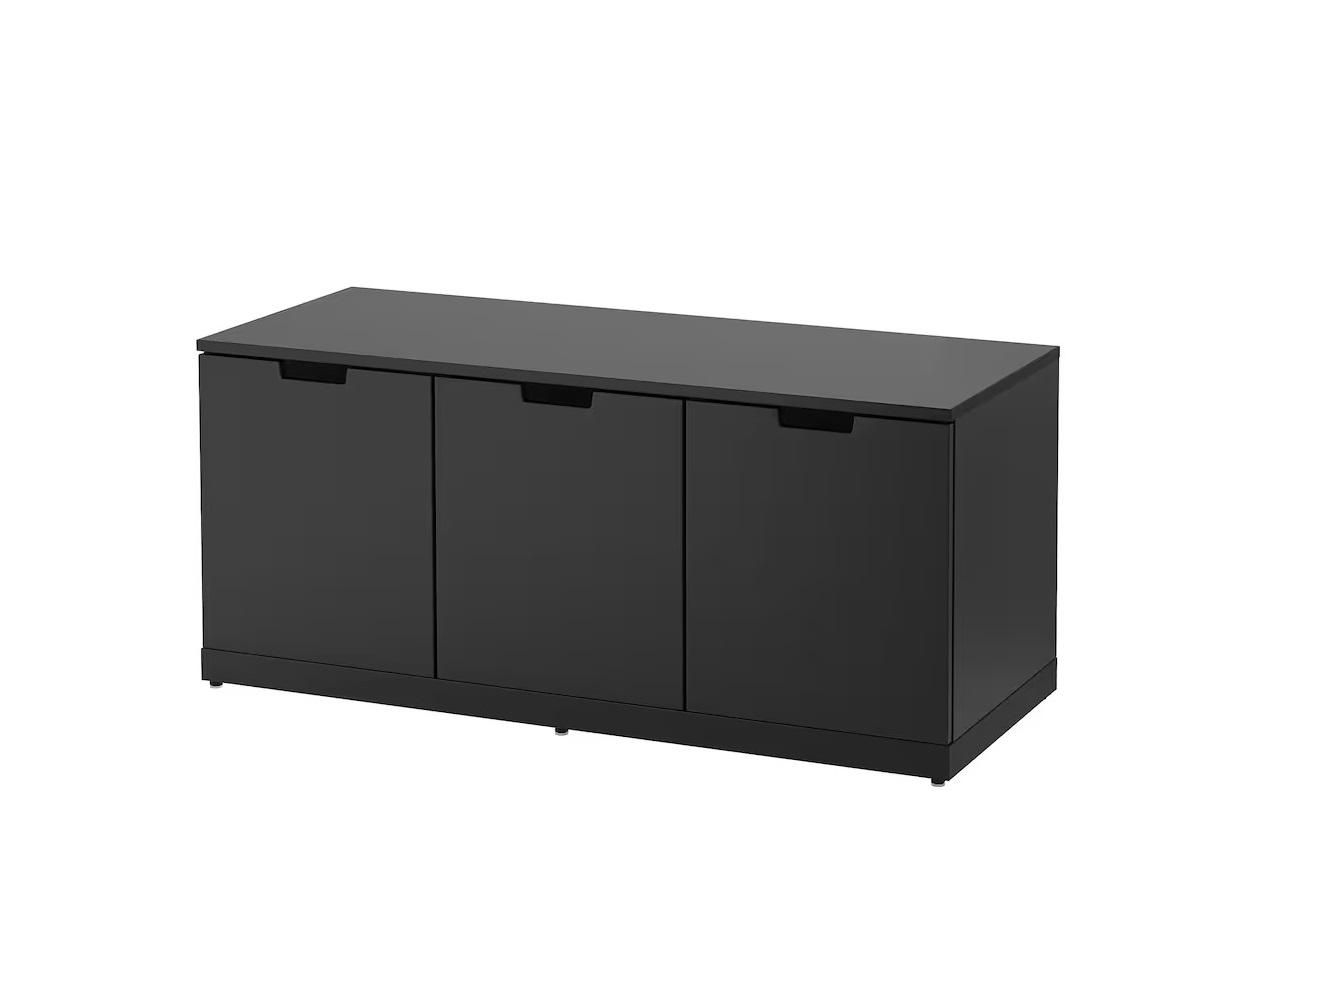 Комод Нордли 45 black ИКЕА (IKEA) изображение товара